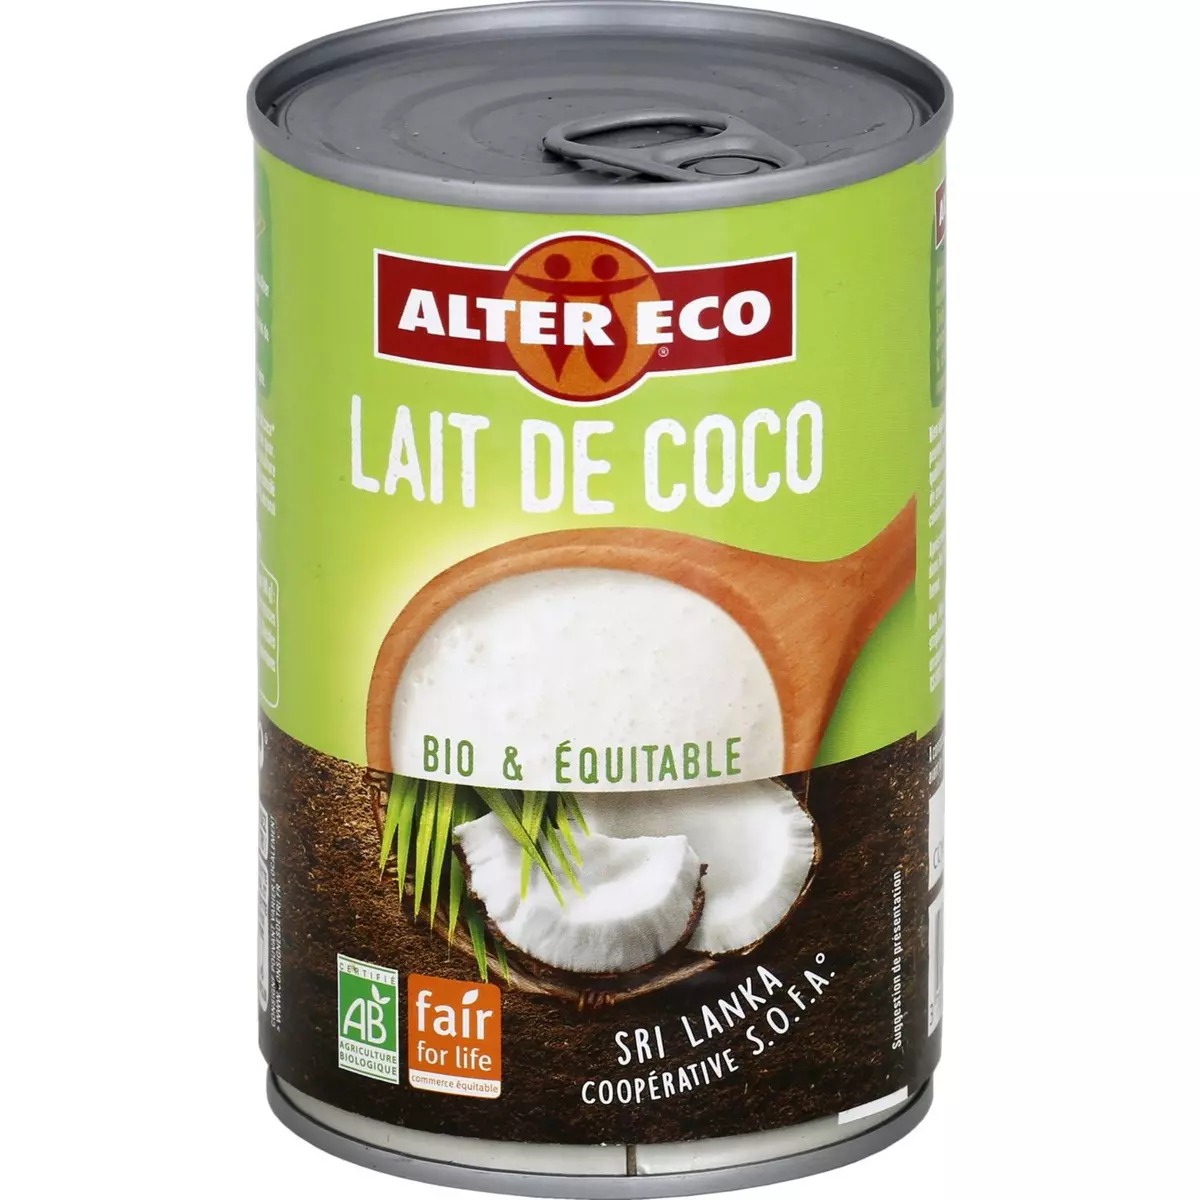 ALTER ECO Lait de coco bio équitable 40cl